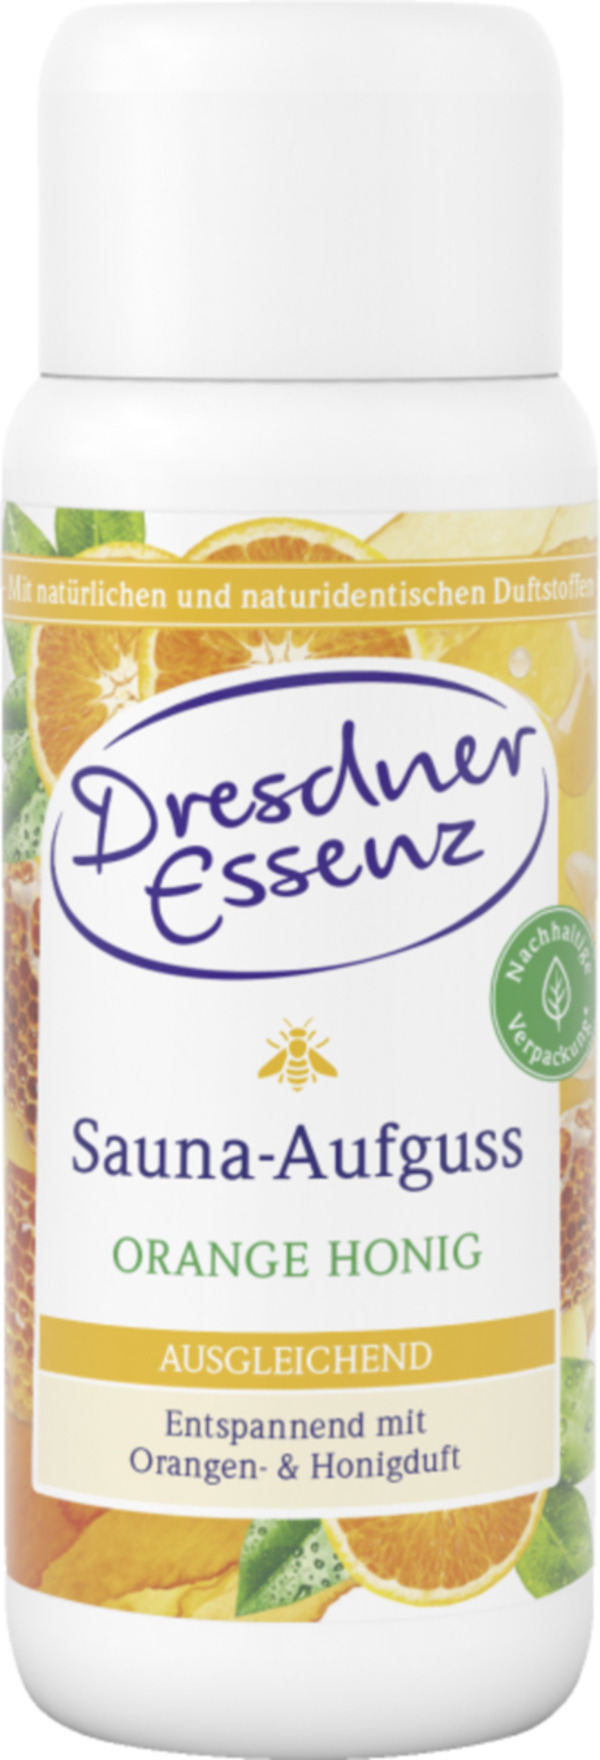 Bild 1 von Dresdner Essenz Sauna Aufguss Orange Honig